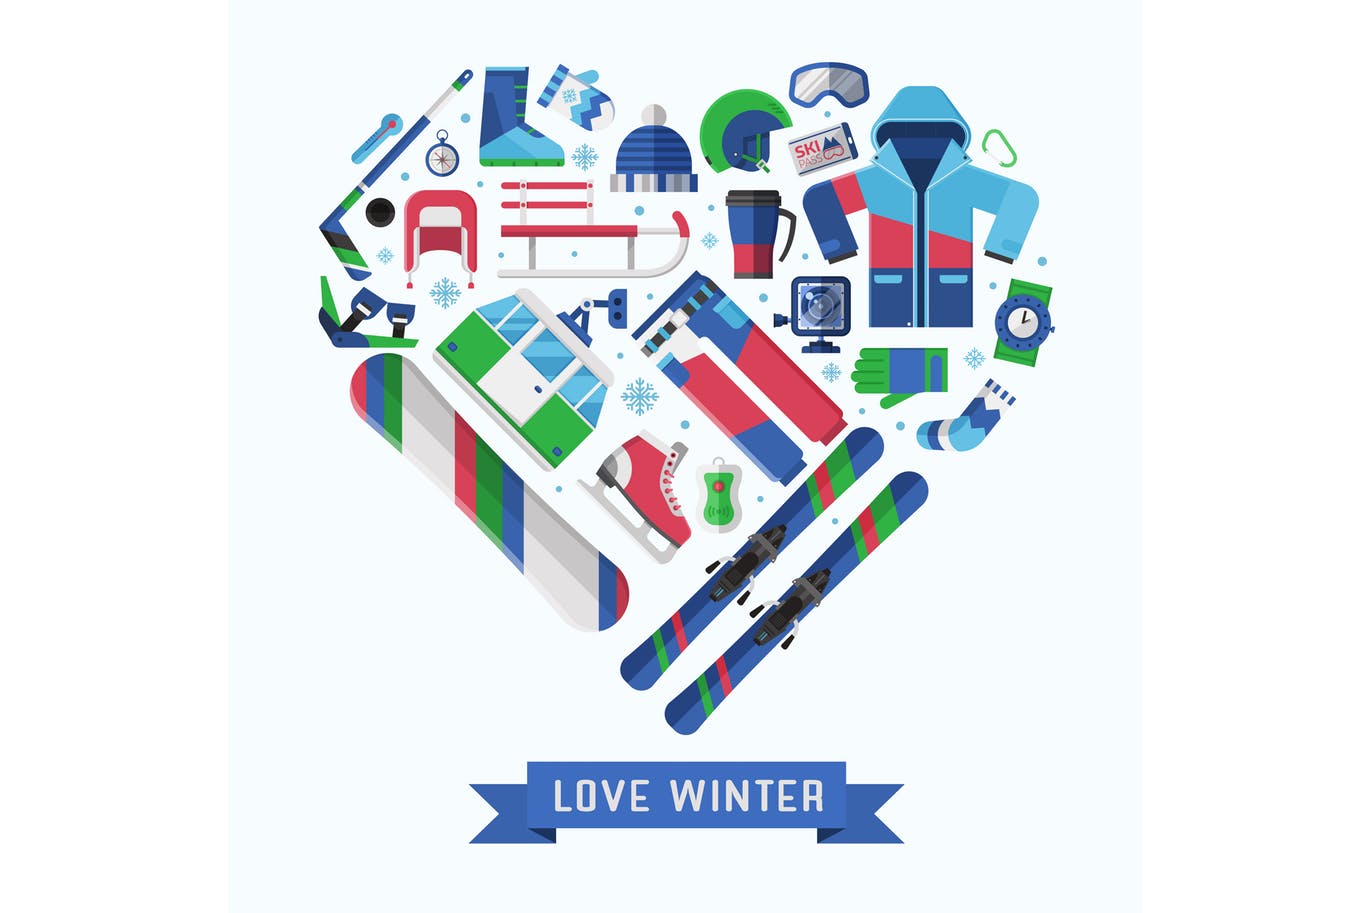 冬季运动主题扁平设计风格心形矢量插画素材库精选 Love Winter Sports Heart Print插图